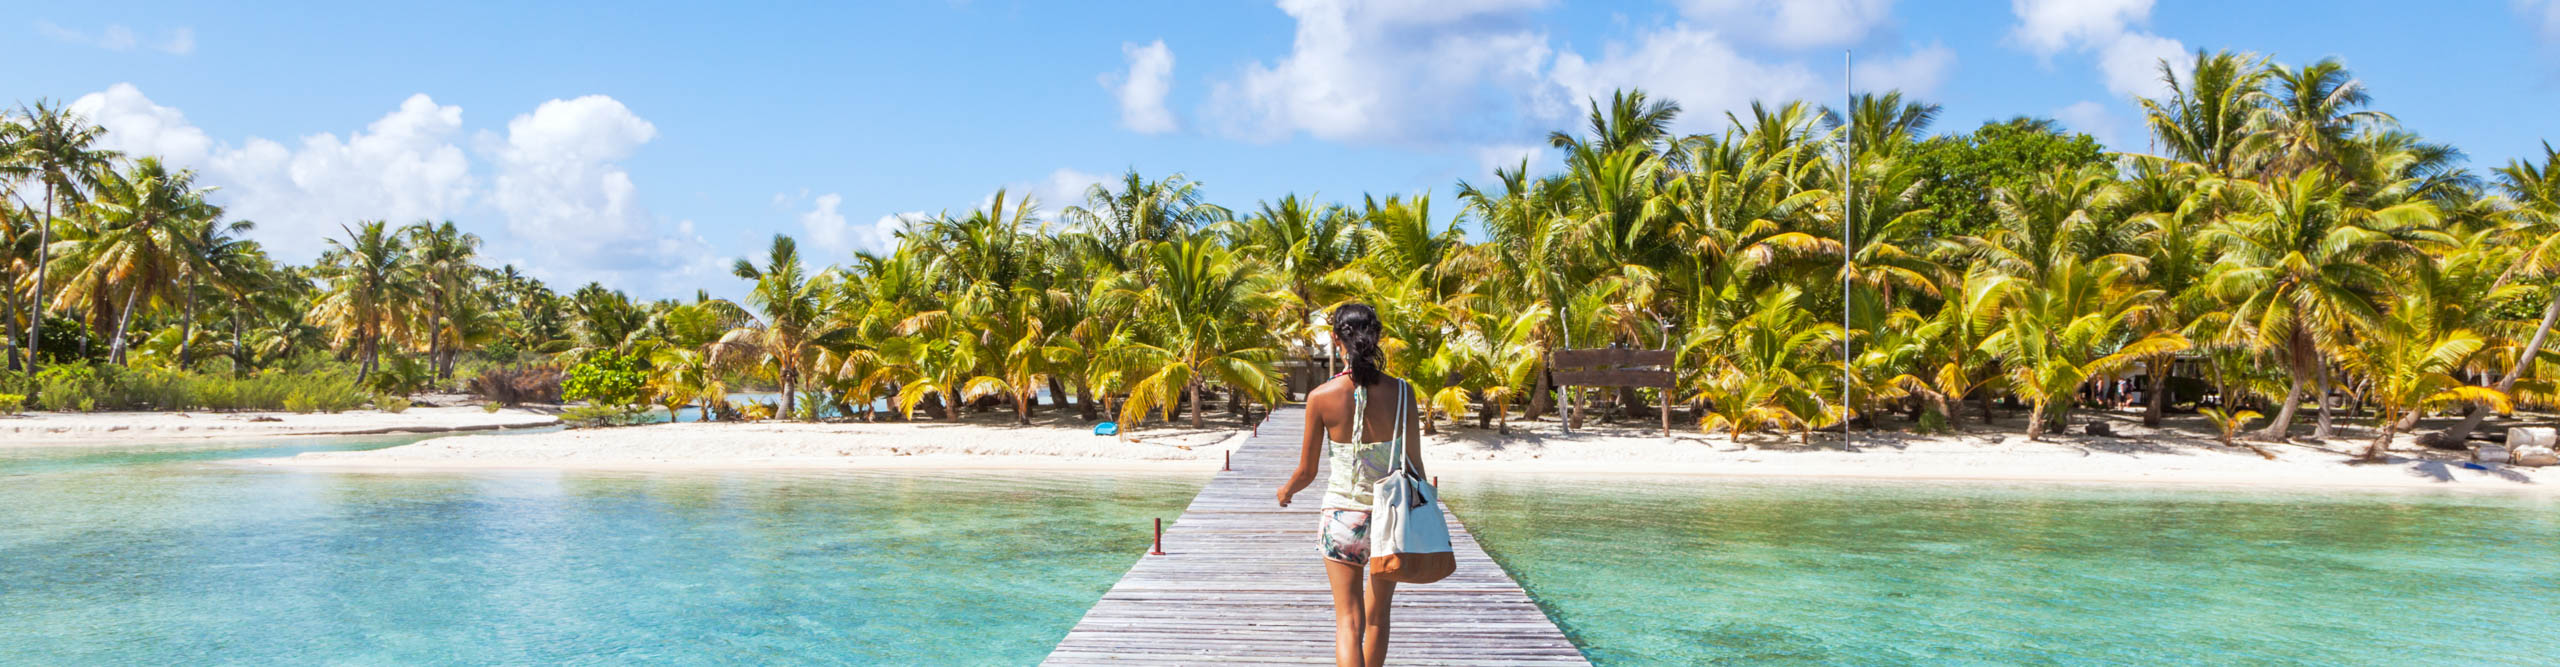 Tourist walking on jetty, Tikehau atoll, Tuamotu Archipelago, French Polynesia, Oceania